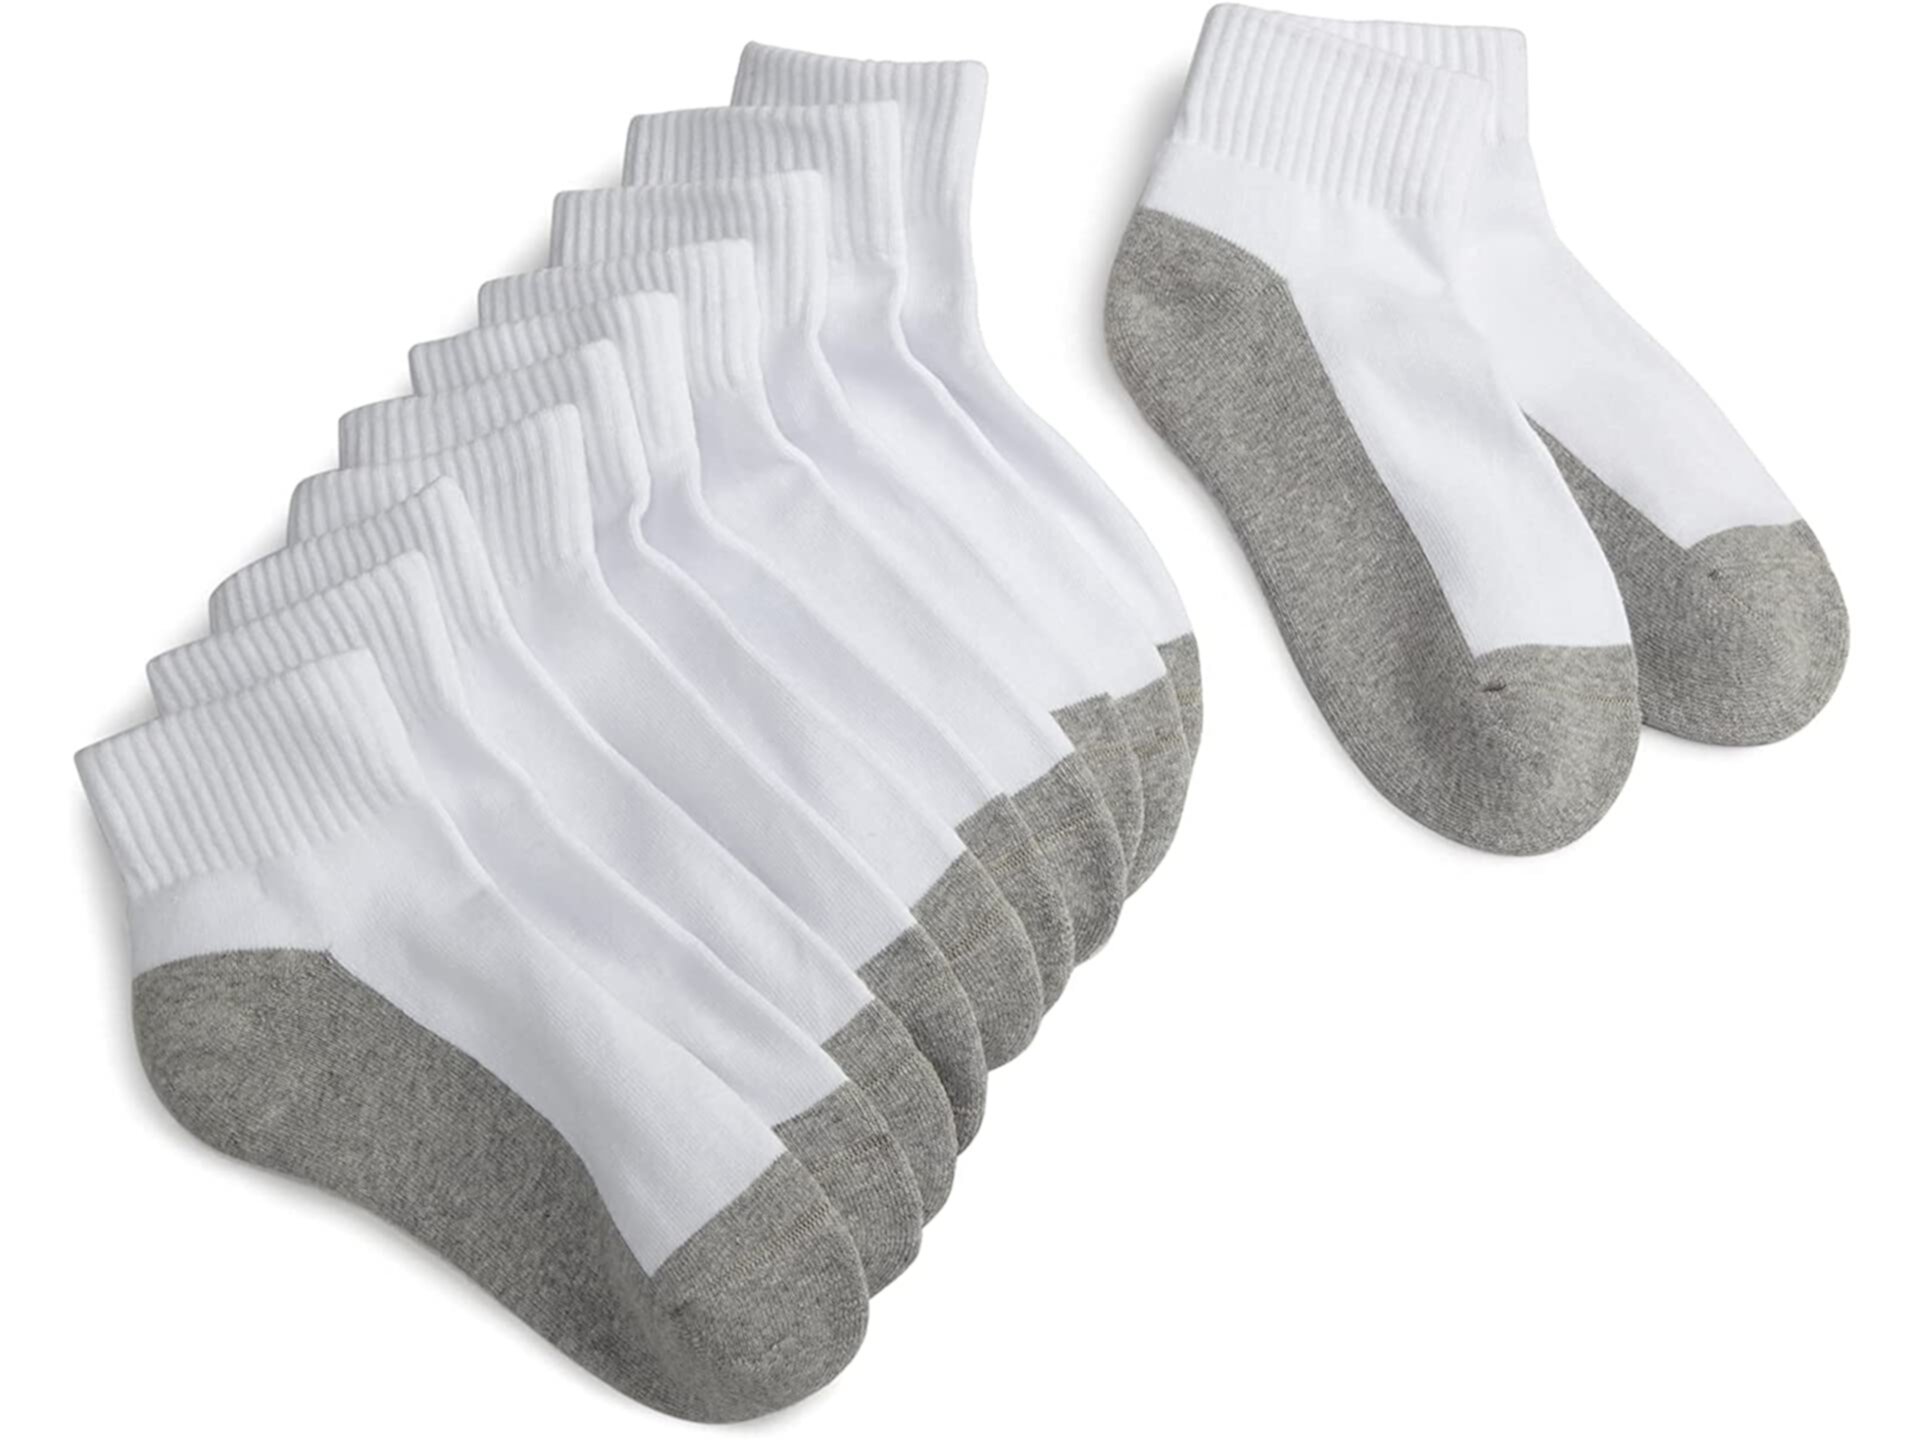 Спортивные носки Quarter с бесшовным мыском (6 шт. в упаковке) Jefferies Socks